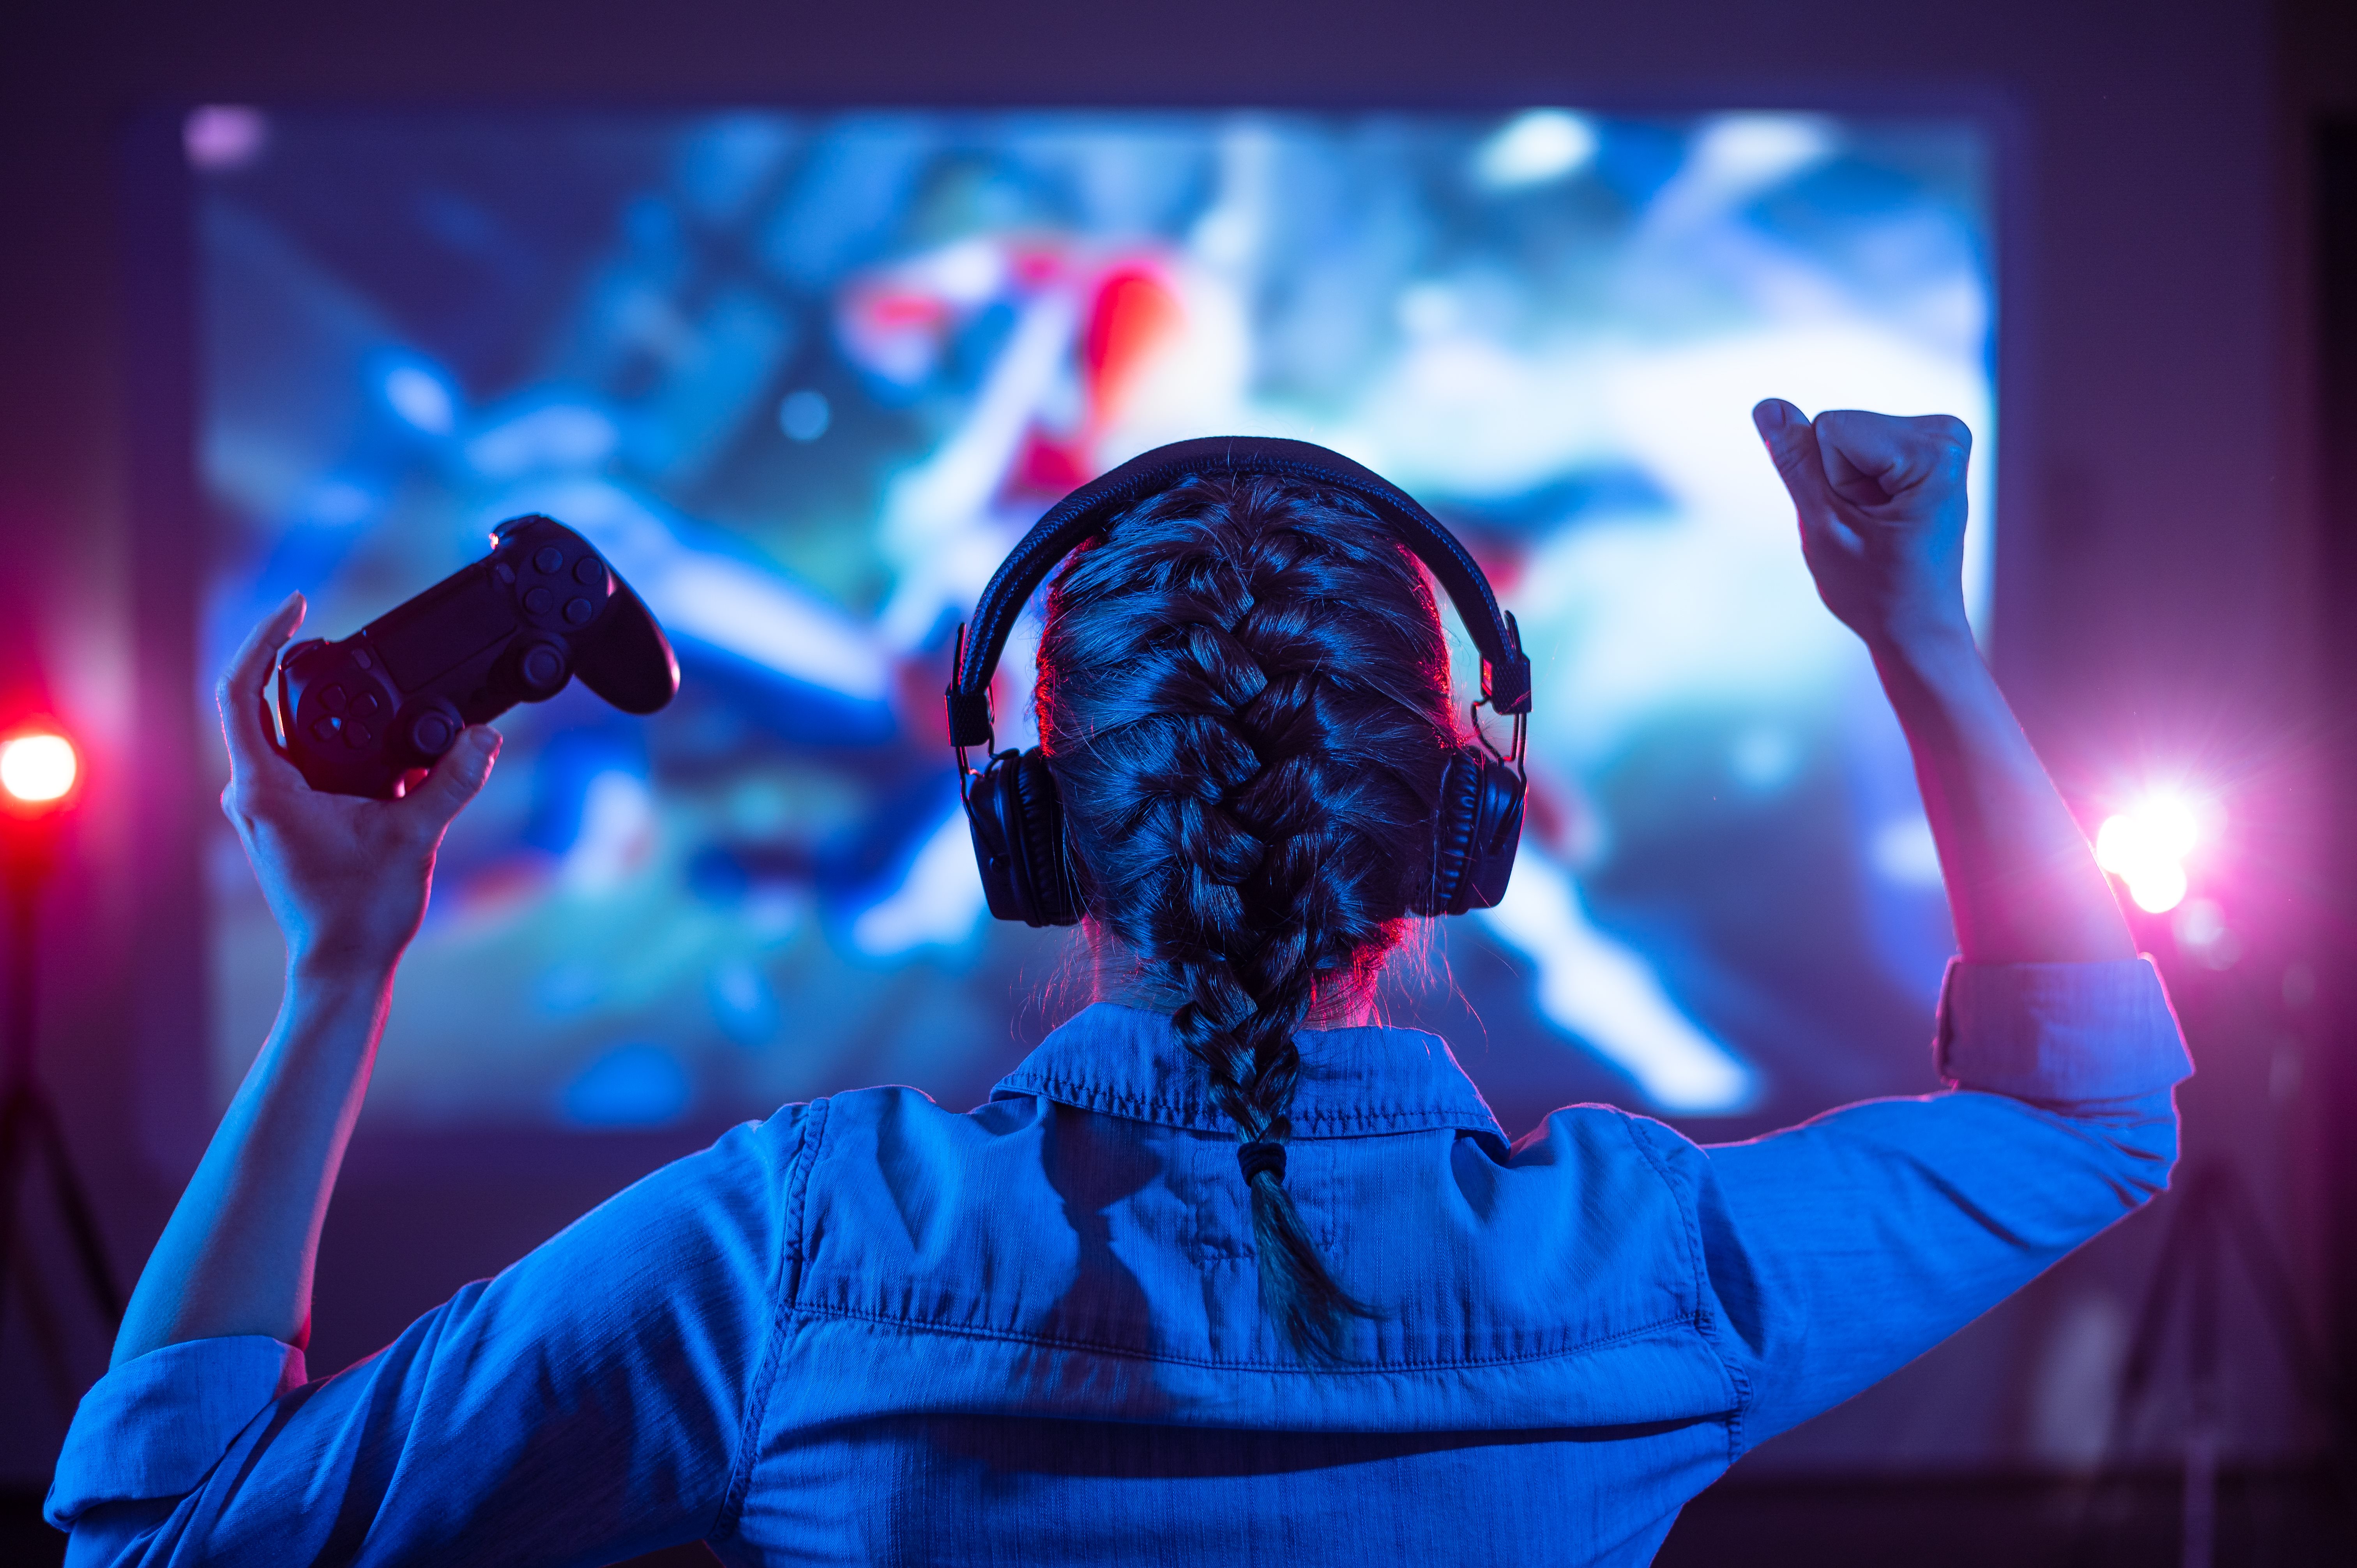 Une joueuse de jeu vidéo, manette à la main et poing dans les airs, devant un écran